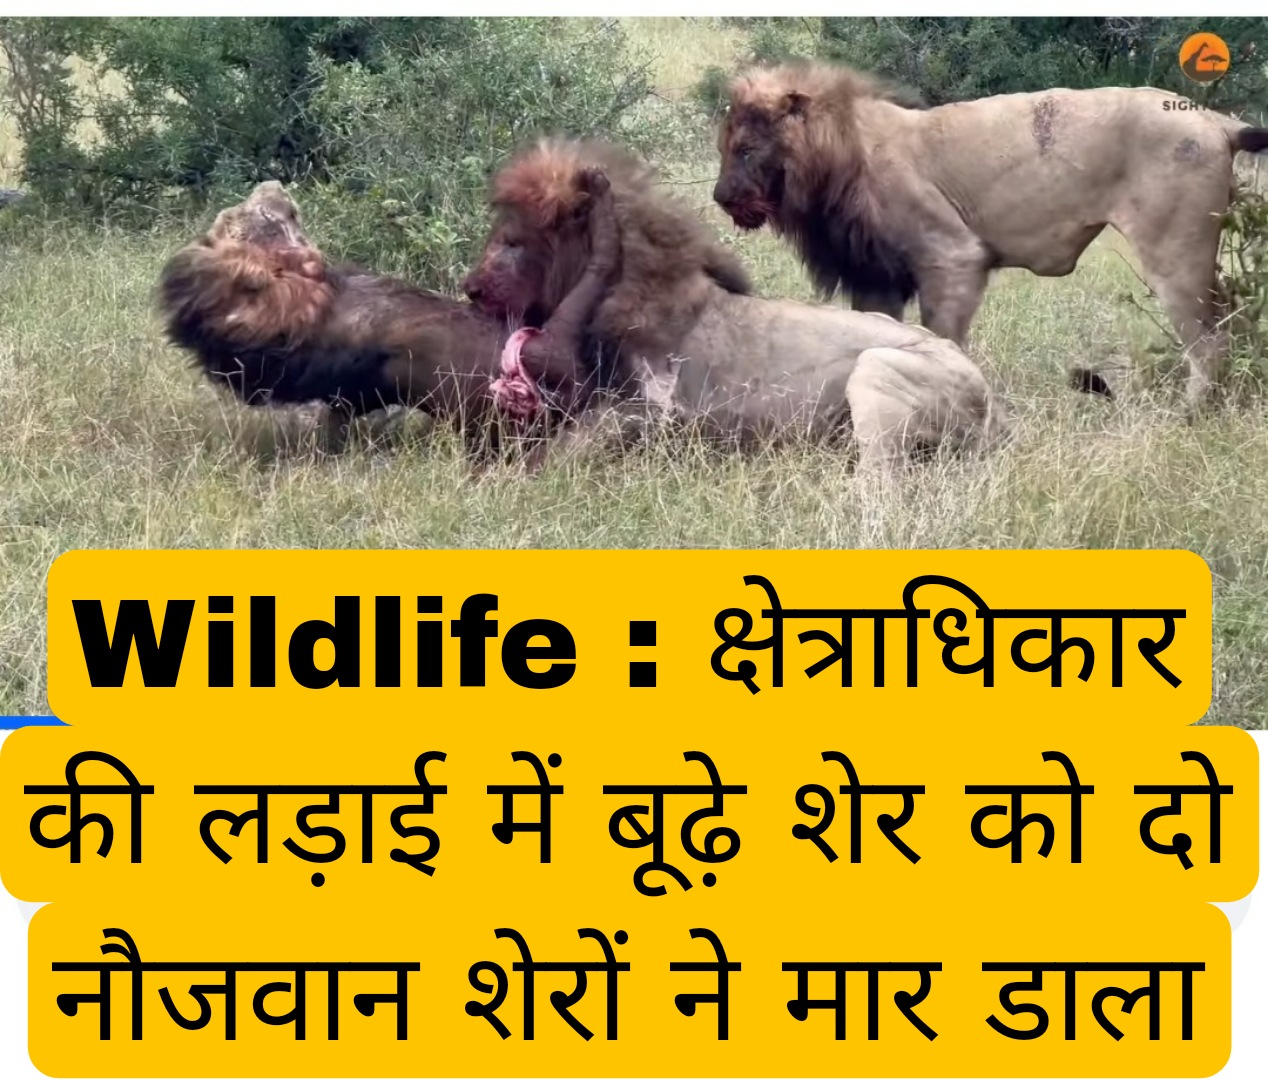 Wildlife : क्षेत्राधिकार की लड़ाई में बूढ़े शेर को दो नौजवान शेरों ने मार डाला